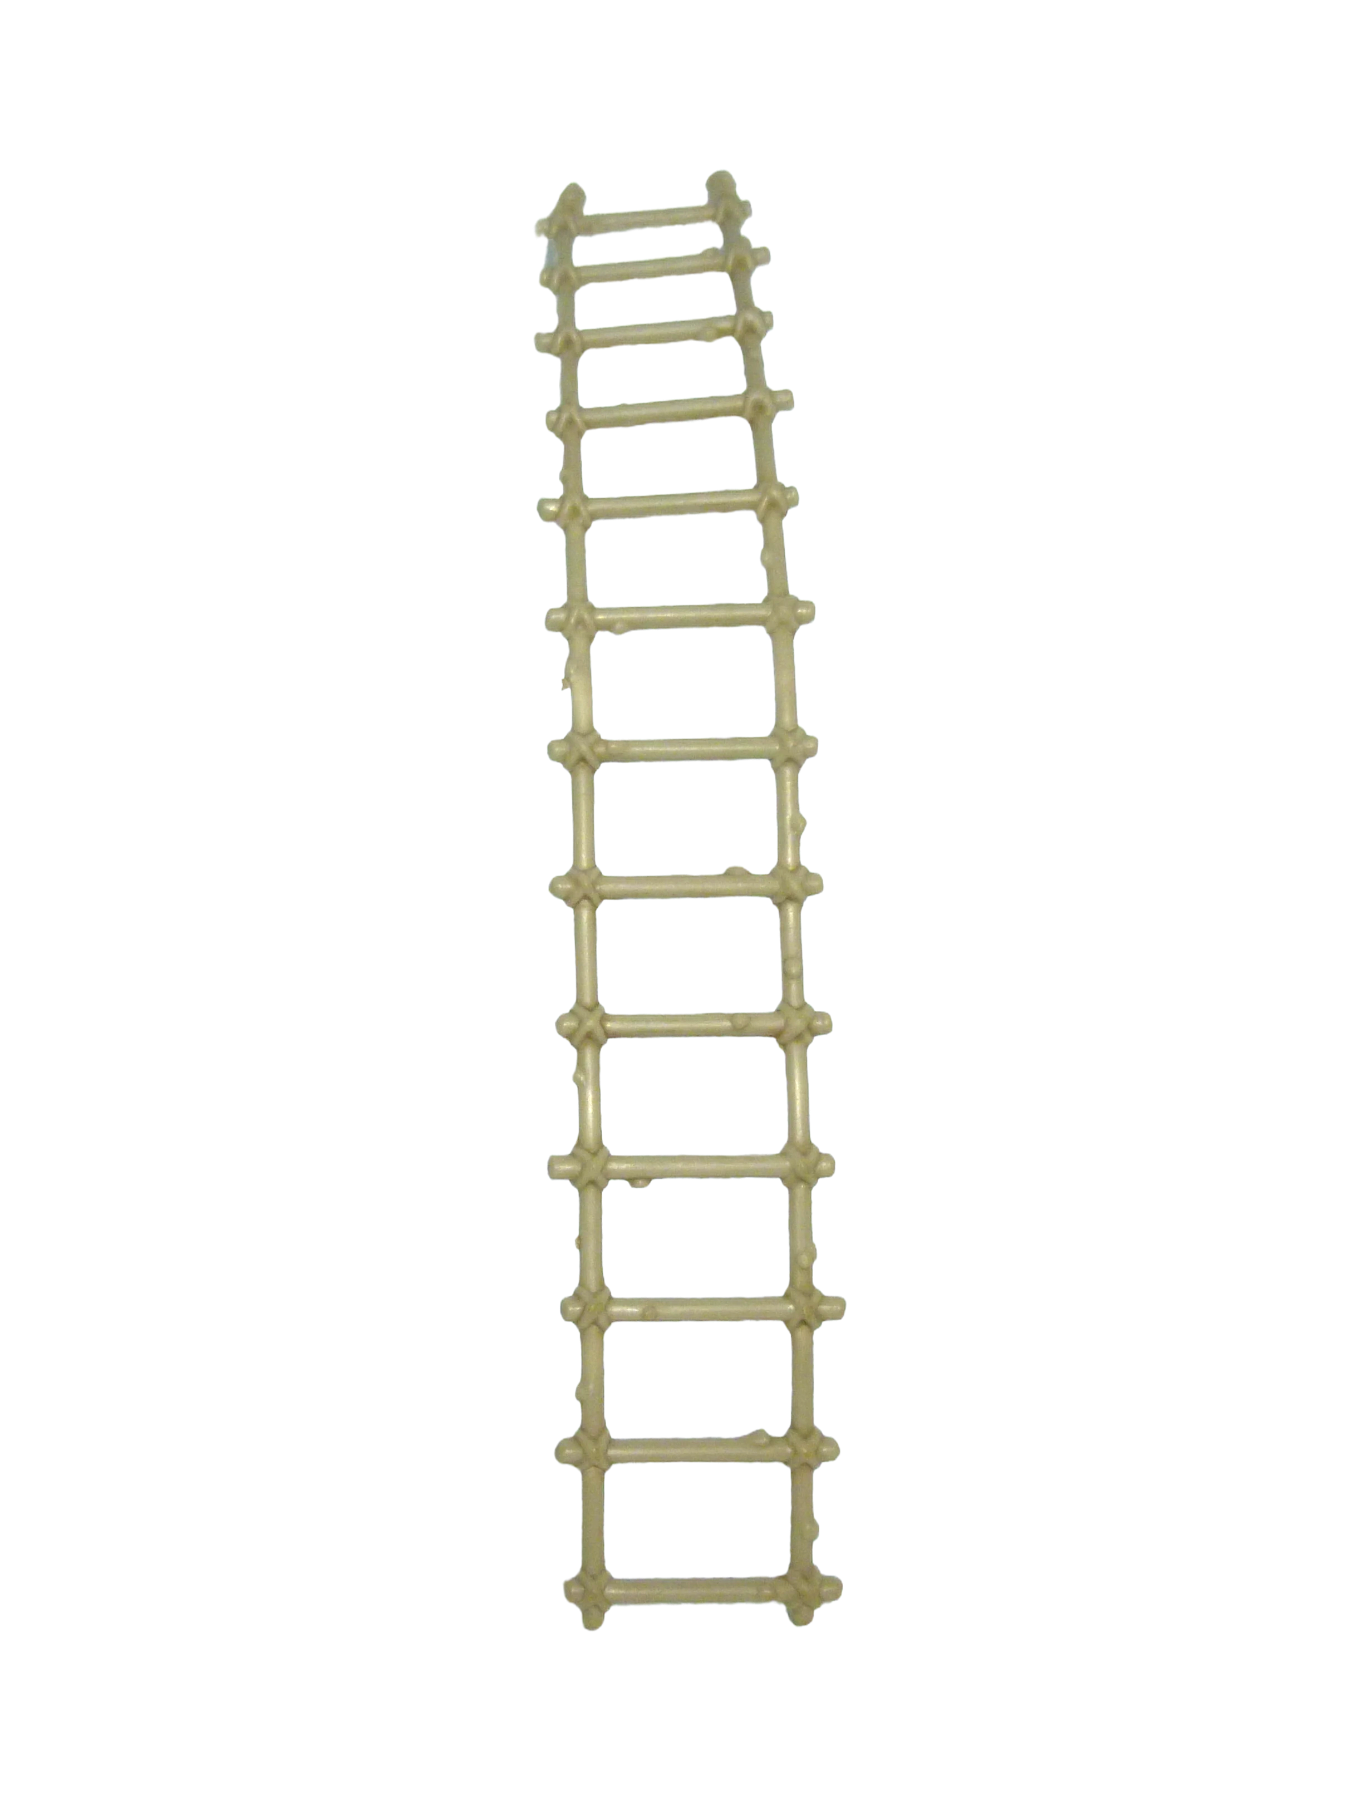 Castle Grayskull Ladder Mattel, Inc. 1981